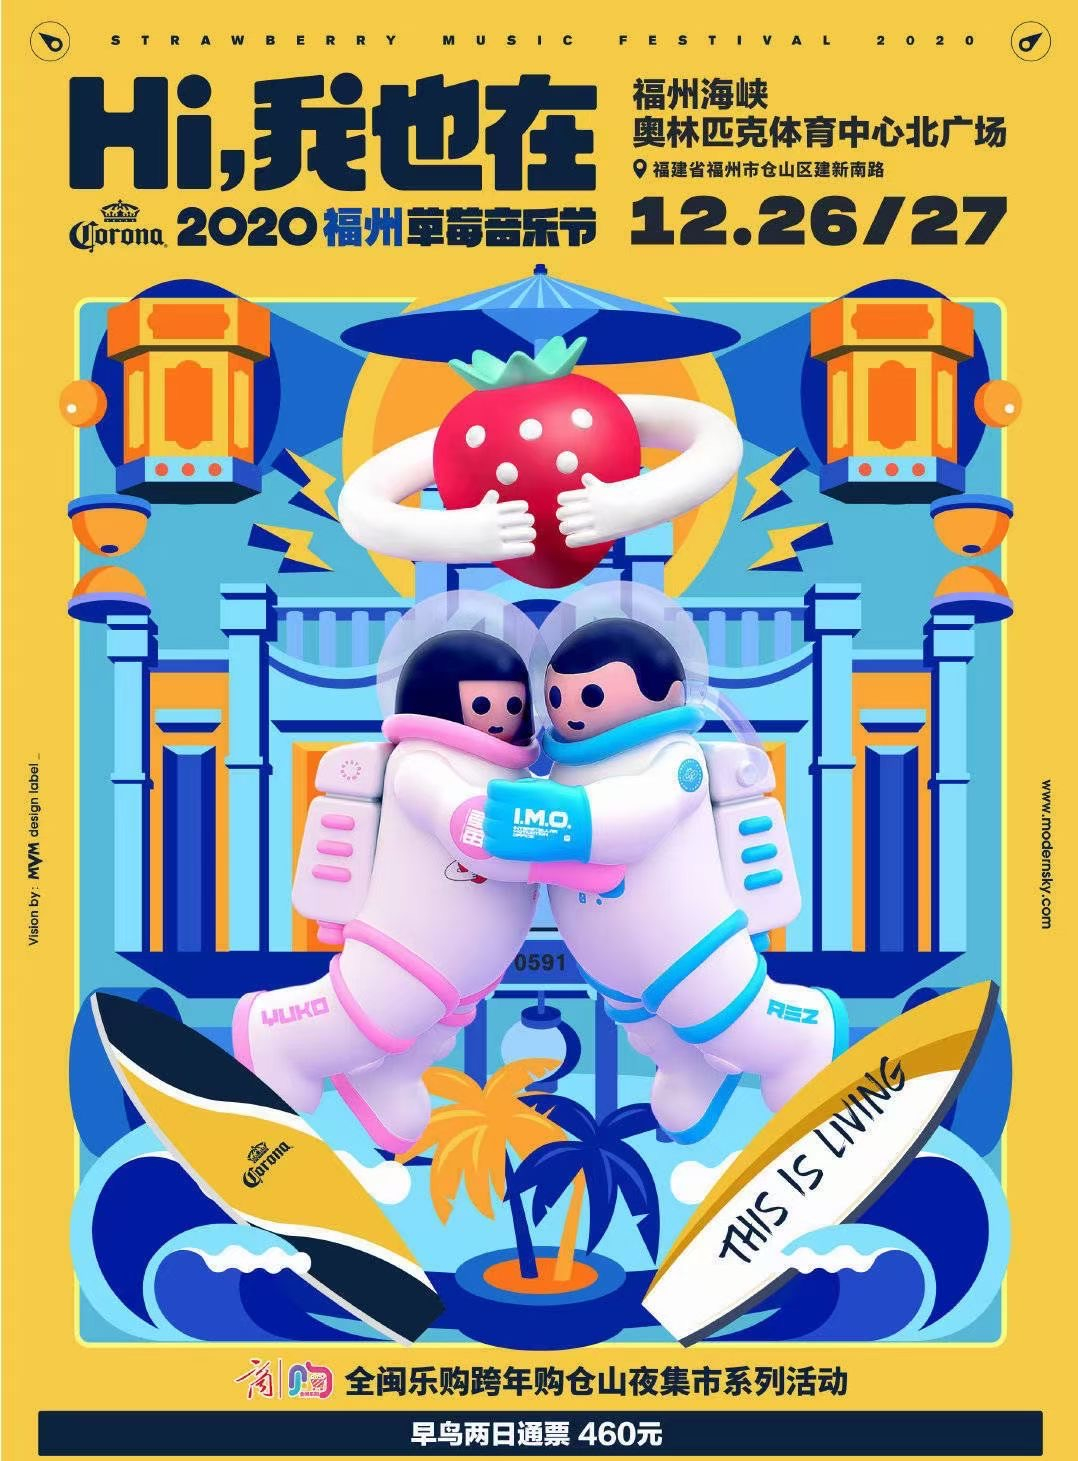 2020福州草莓音乐节